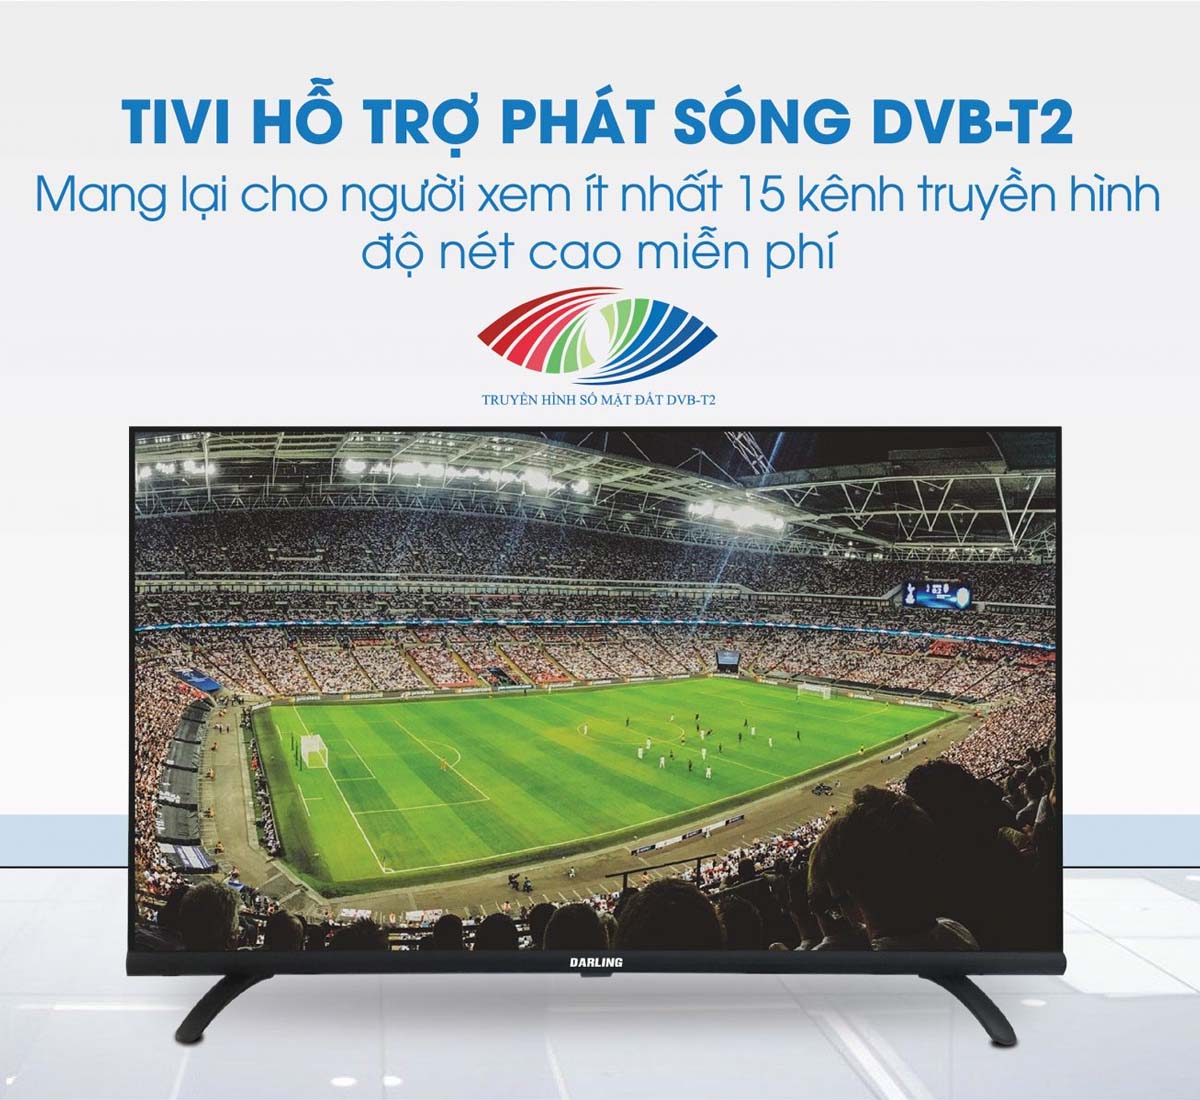 Tích hợp các kênh truyền hình kỹ thuật số DVB-T2